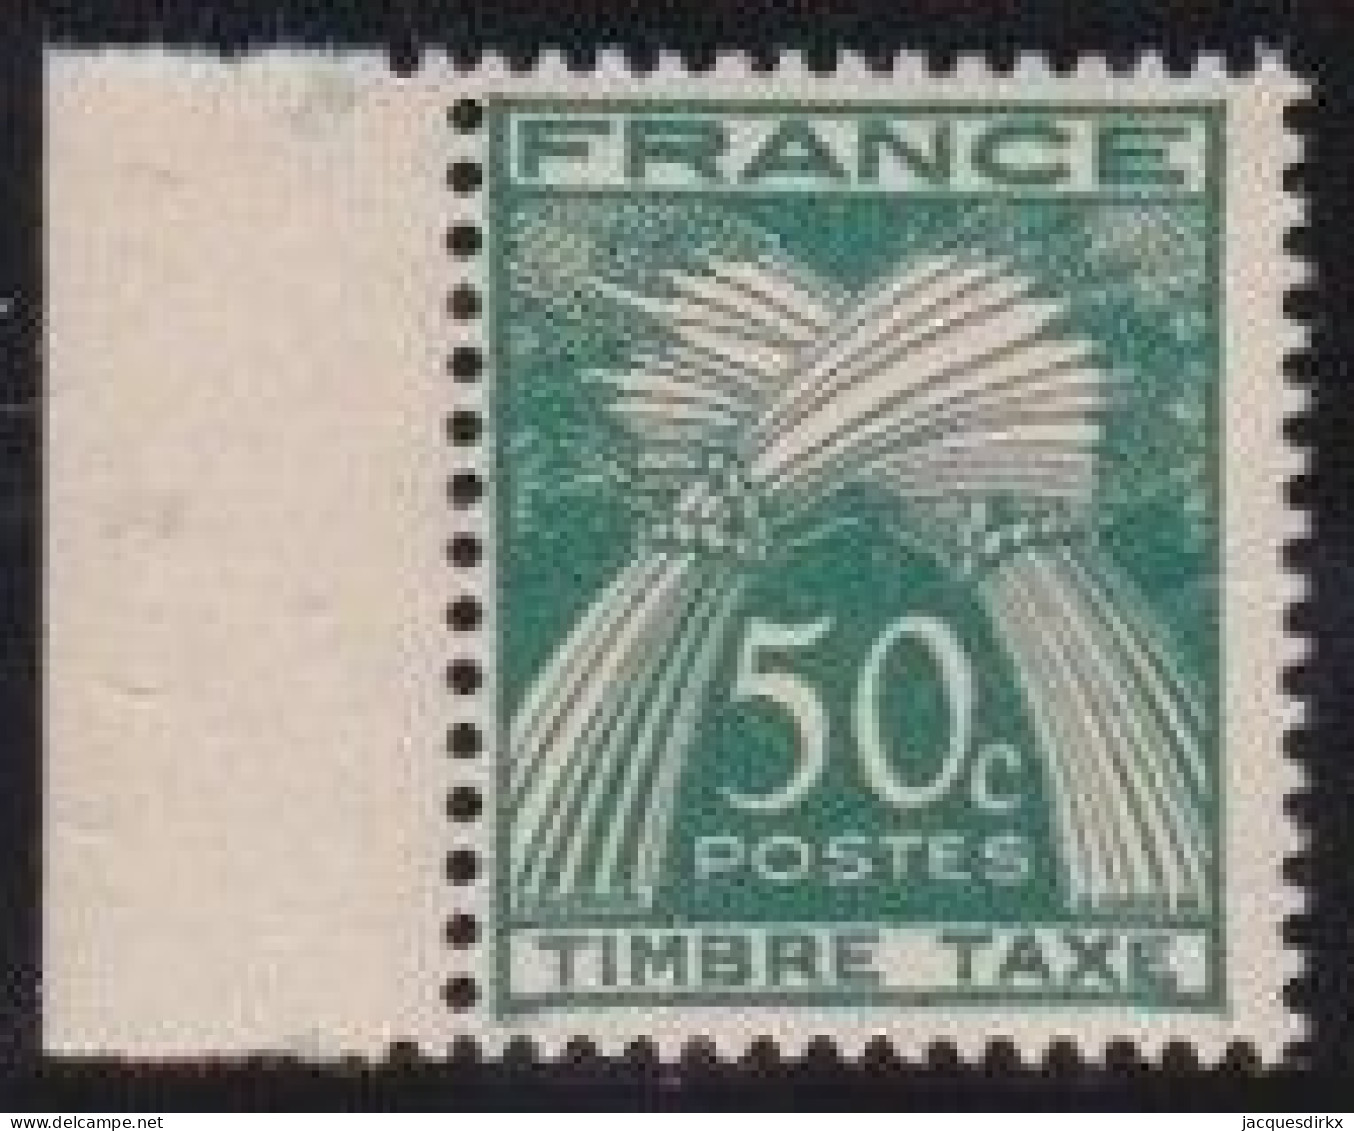 France    .  Y&T   .     Taxe  80       .   **      .    Neuf Avec Gomme Et SANS Charnière - 1859-1959 Nuevos